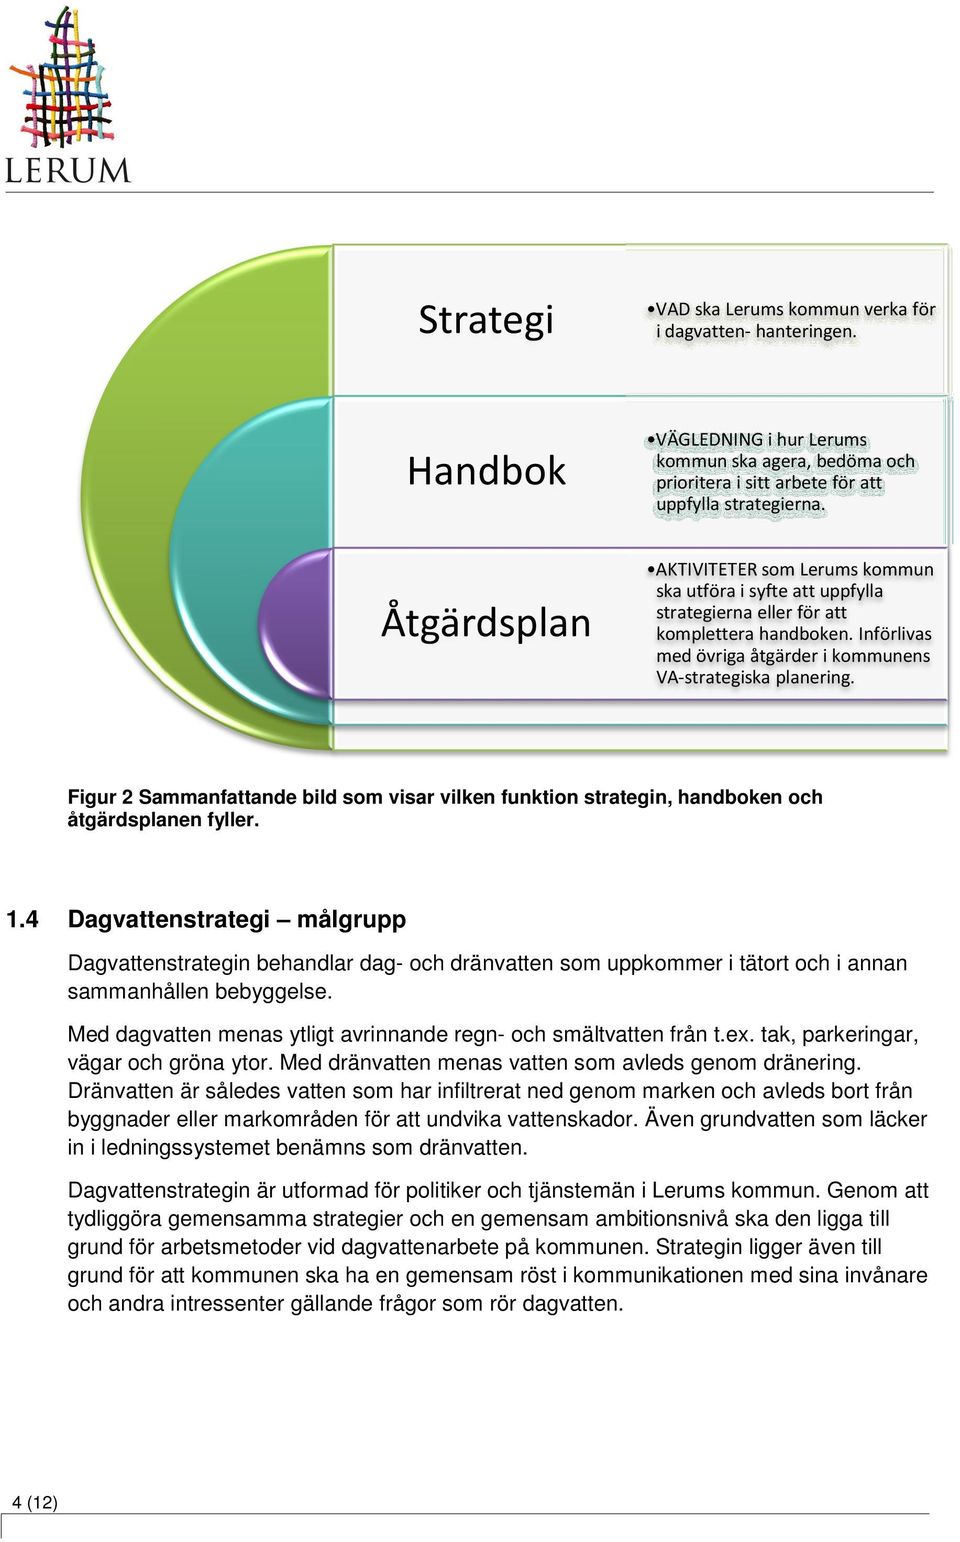 Figur 2 Sammanfattande bild som visar vilken funktion strategin, handboken och åtgärdsplanen fyller. 1.